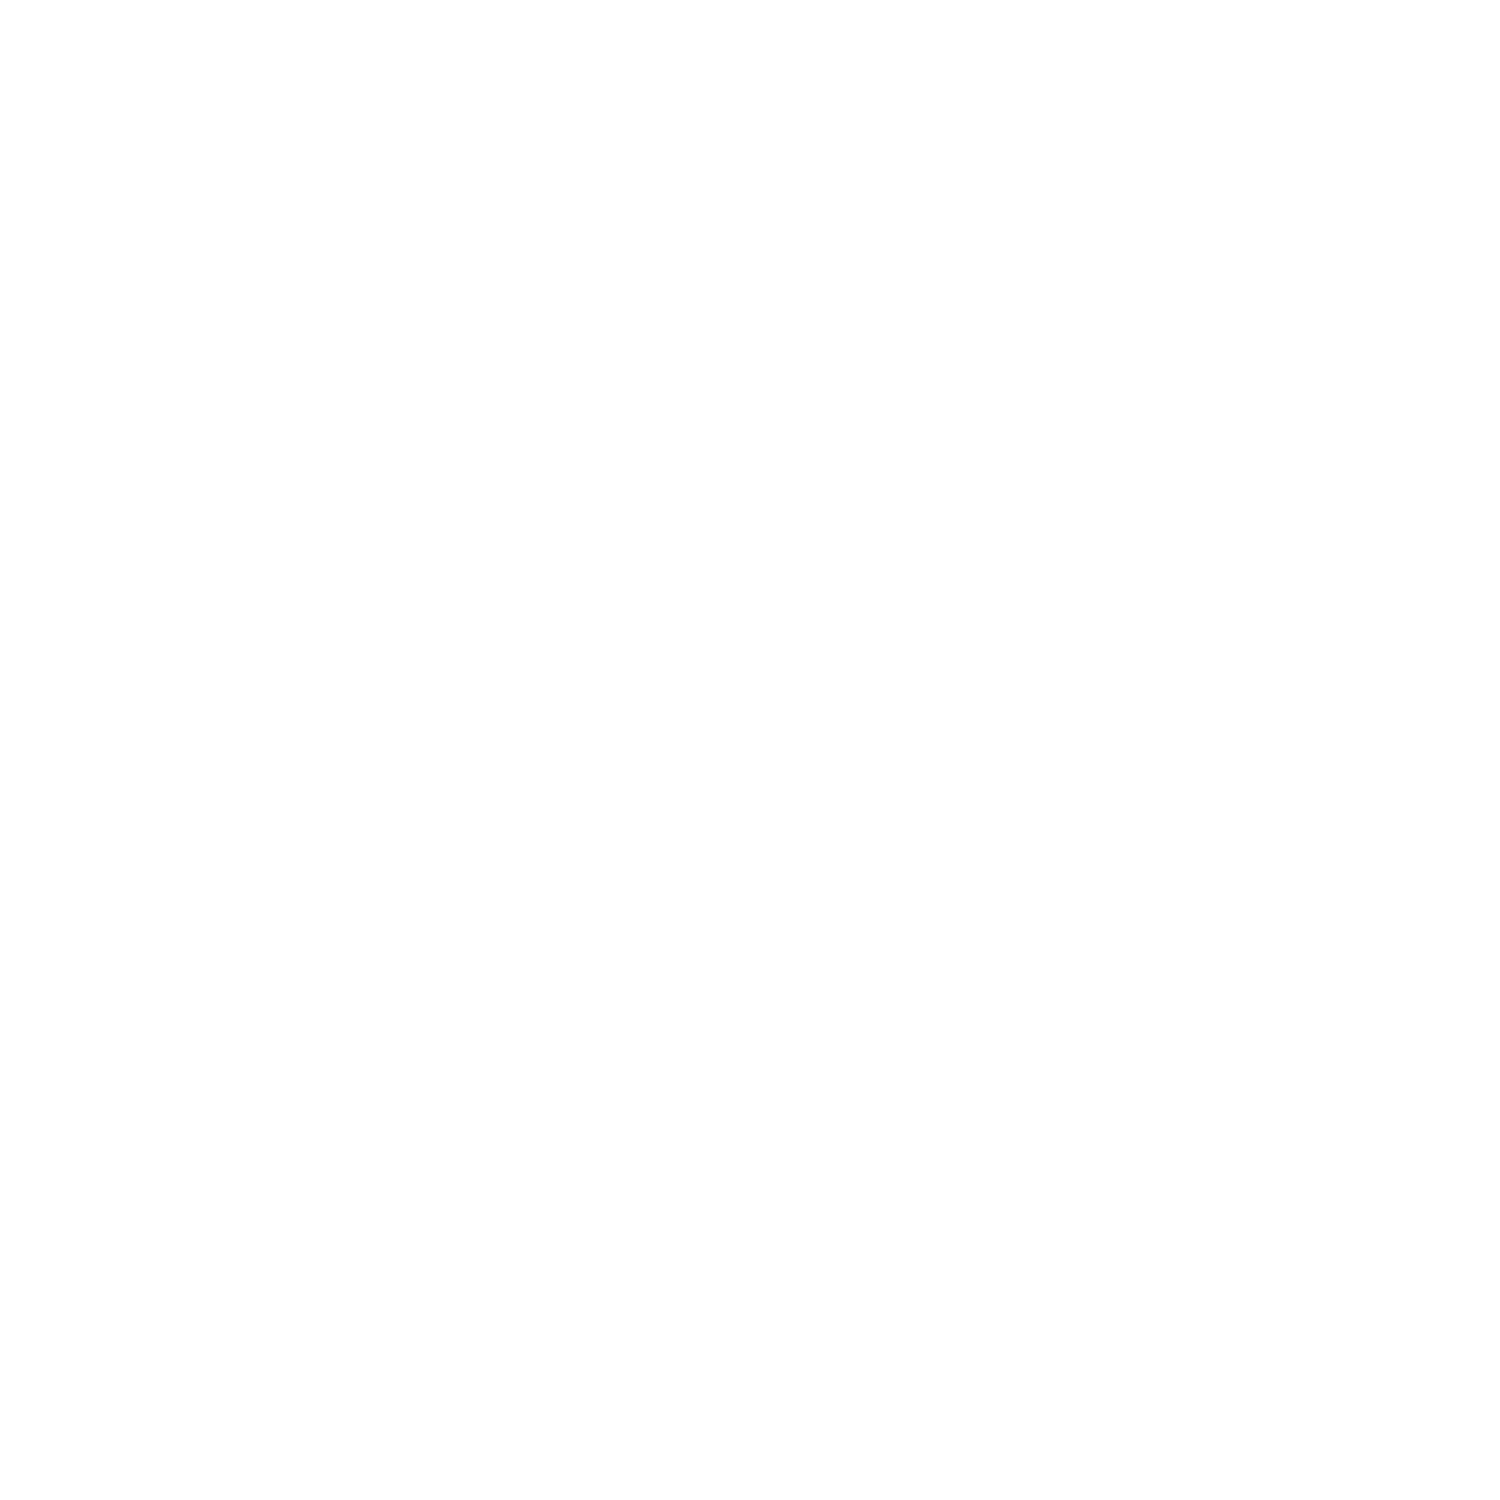 The Calgary Yoga Collective